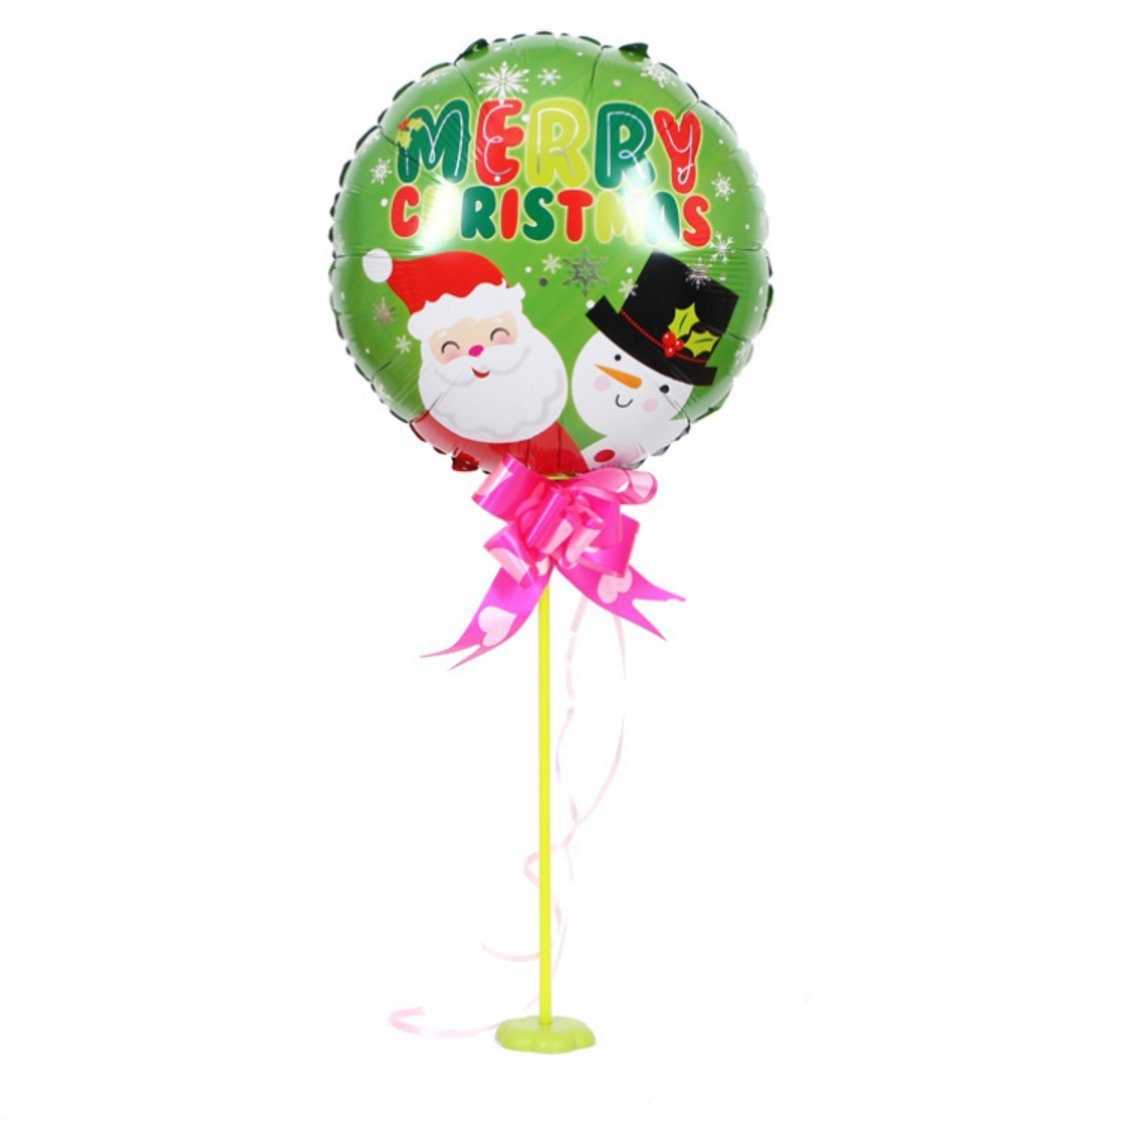 10 Weihnachtsfeiertage Party-Dekorationszubehör Luftballon für Uana Grün